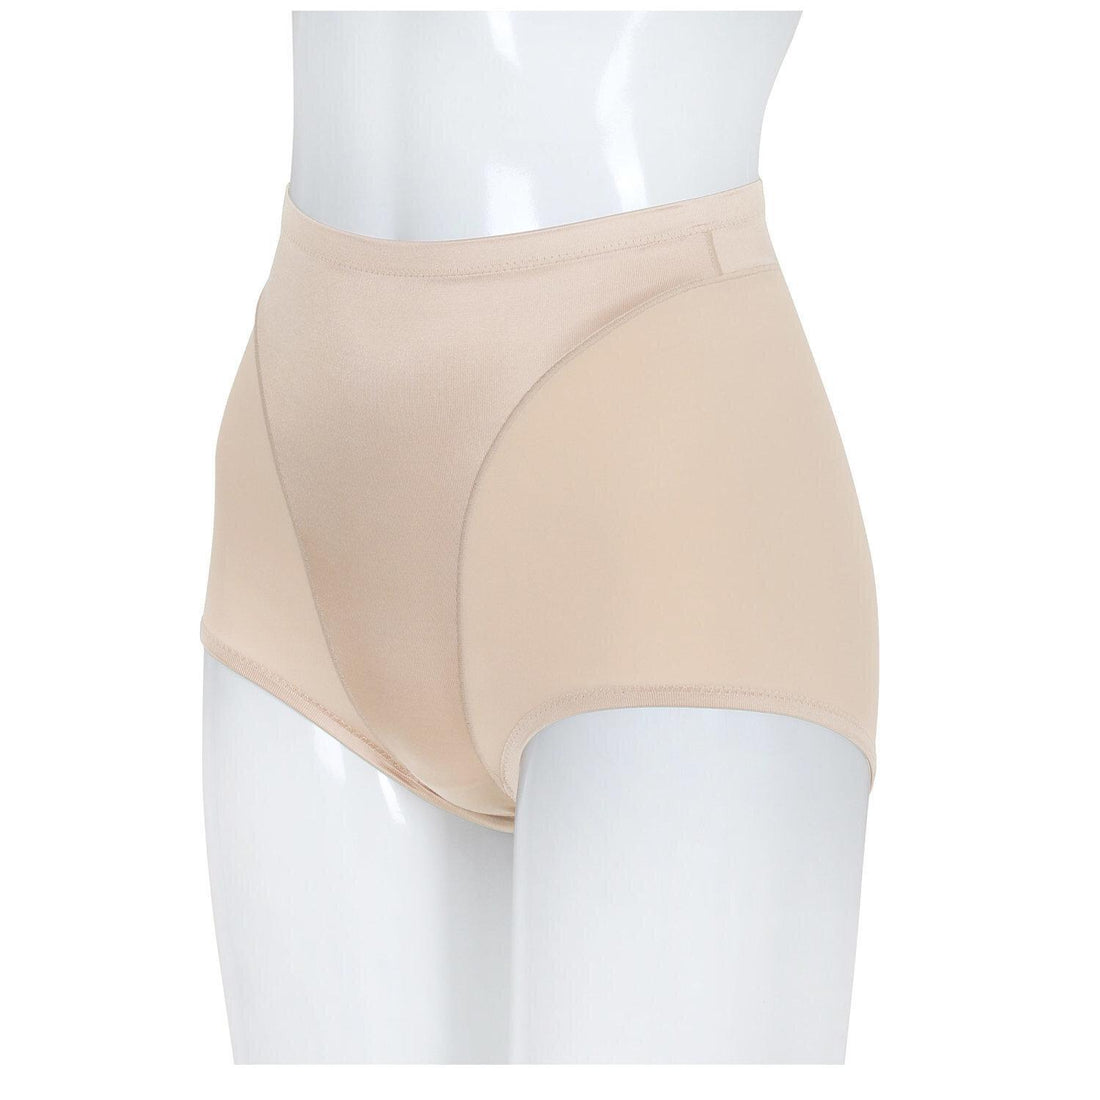 Wacoal Shapewear Hips Tummy Control Panties Model WY1128 Beige (BE)